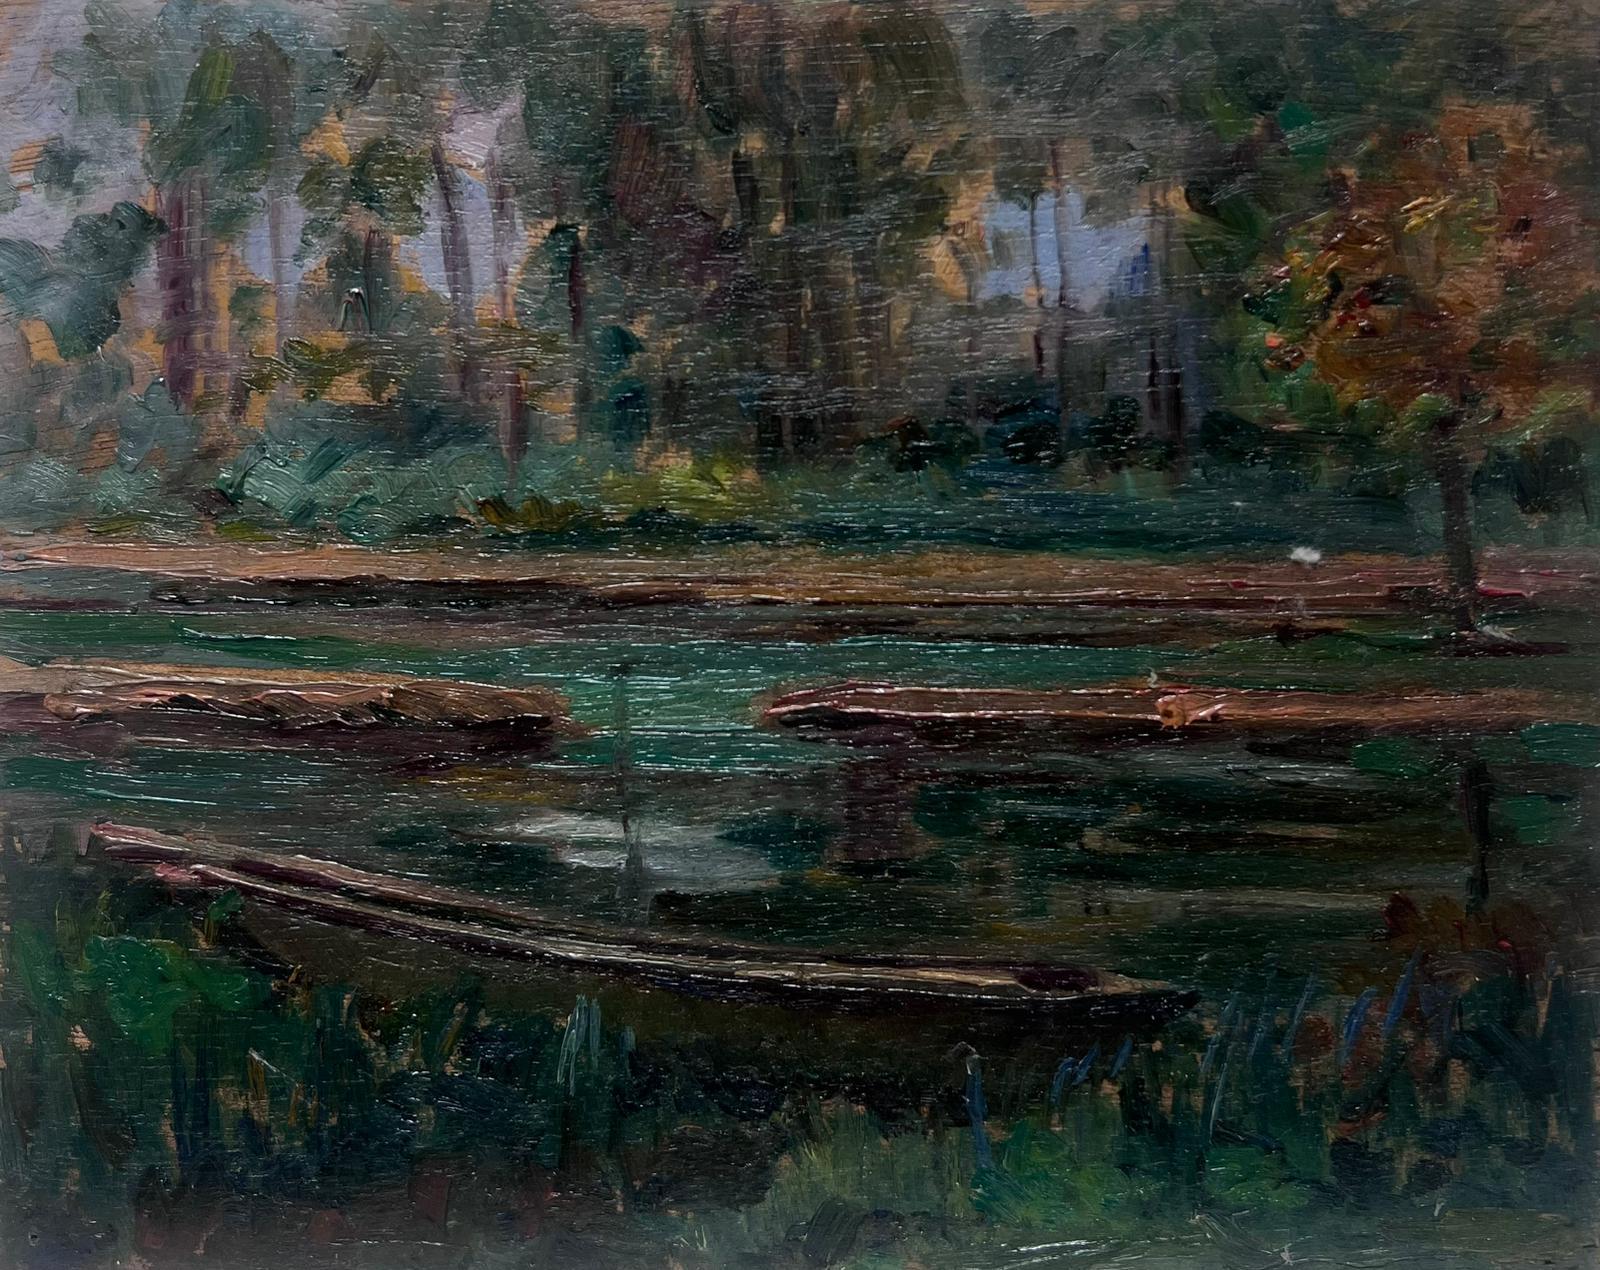 Landscape Painting Louise Alix - Peinture à l'huile française des années 1930, paysage de bois, rivière foncée